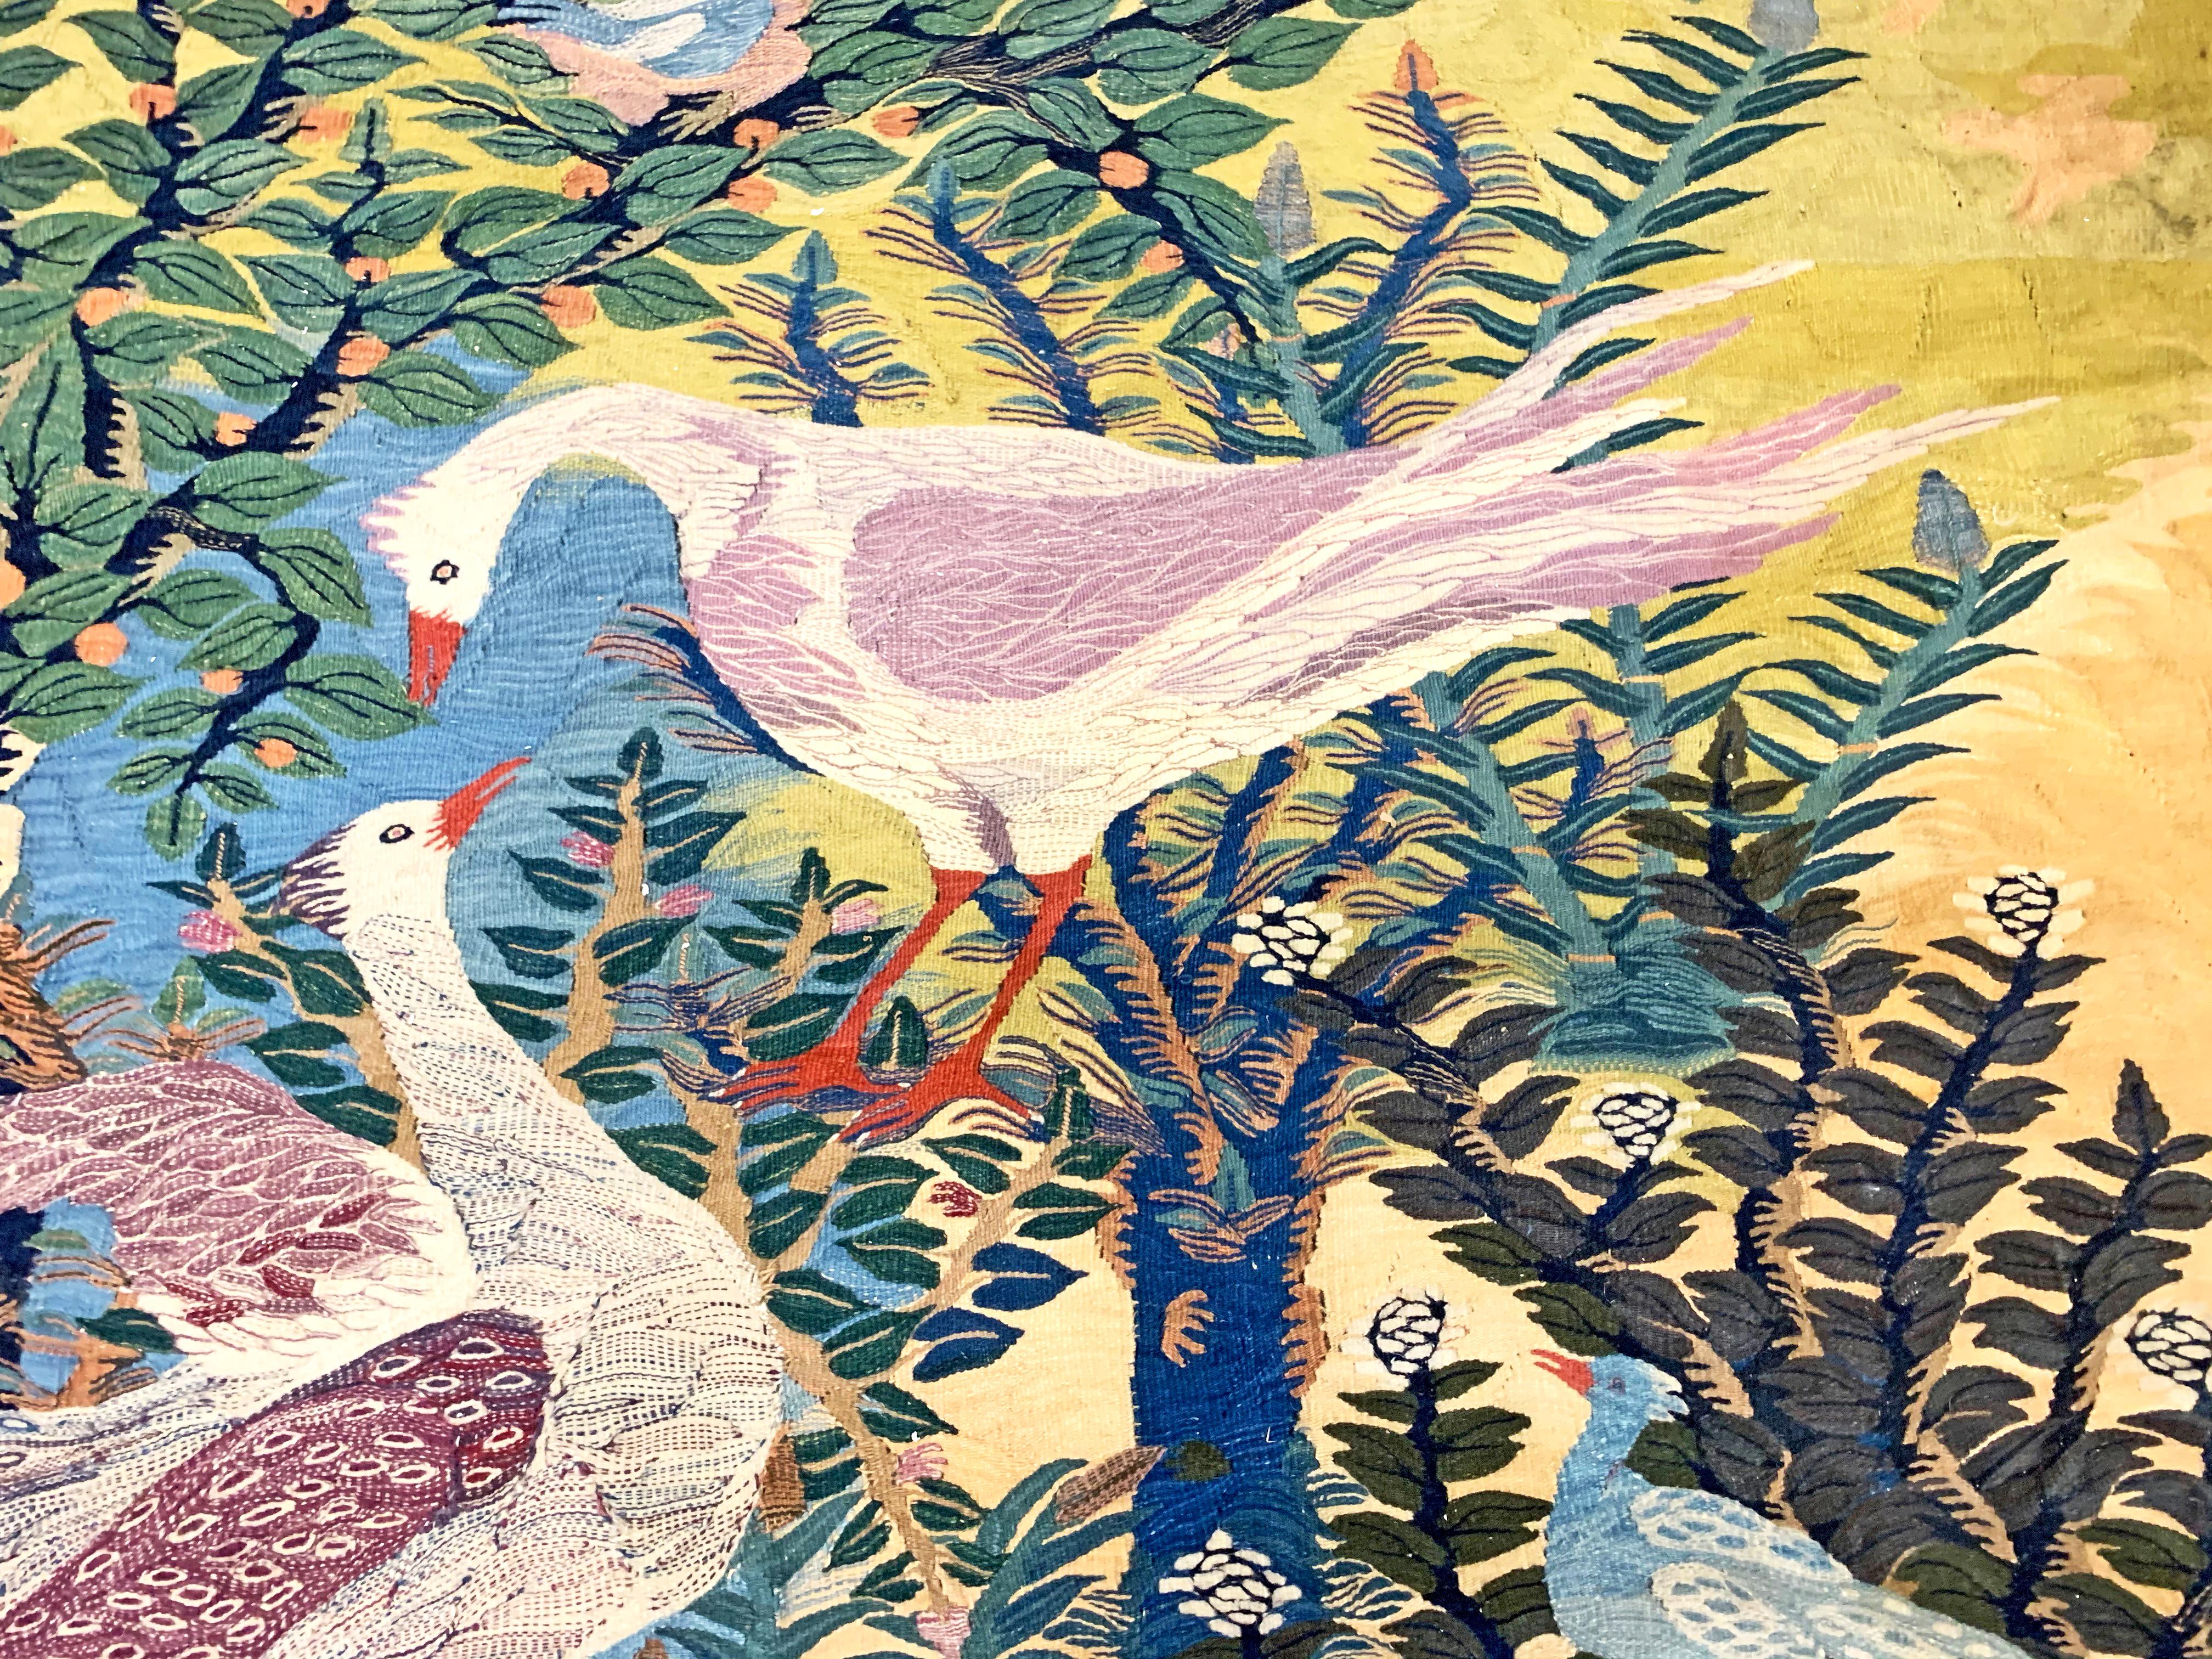 Datant de 1976, soit une vingtaine d'années après que Ramsès Wissa Wassef a créé son atelier de tapisserie dans les années 1950, cette tapisserie monumentale de Samina Ahmed, l'une de ses premières élèves, est dominée par le célèbre motif de